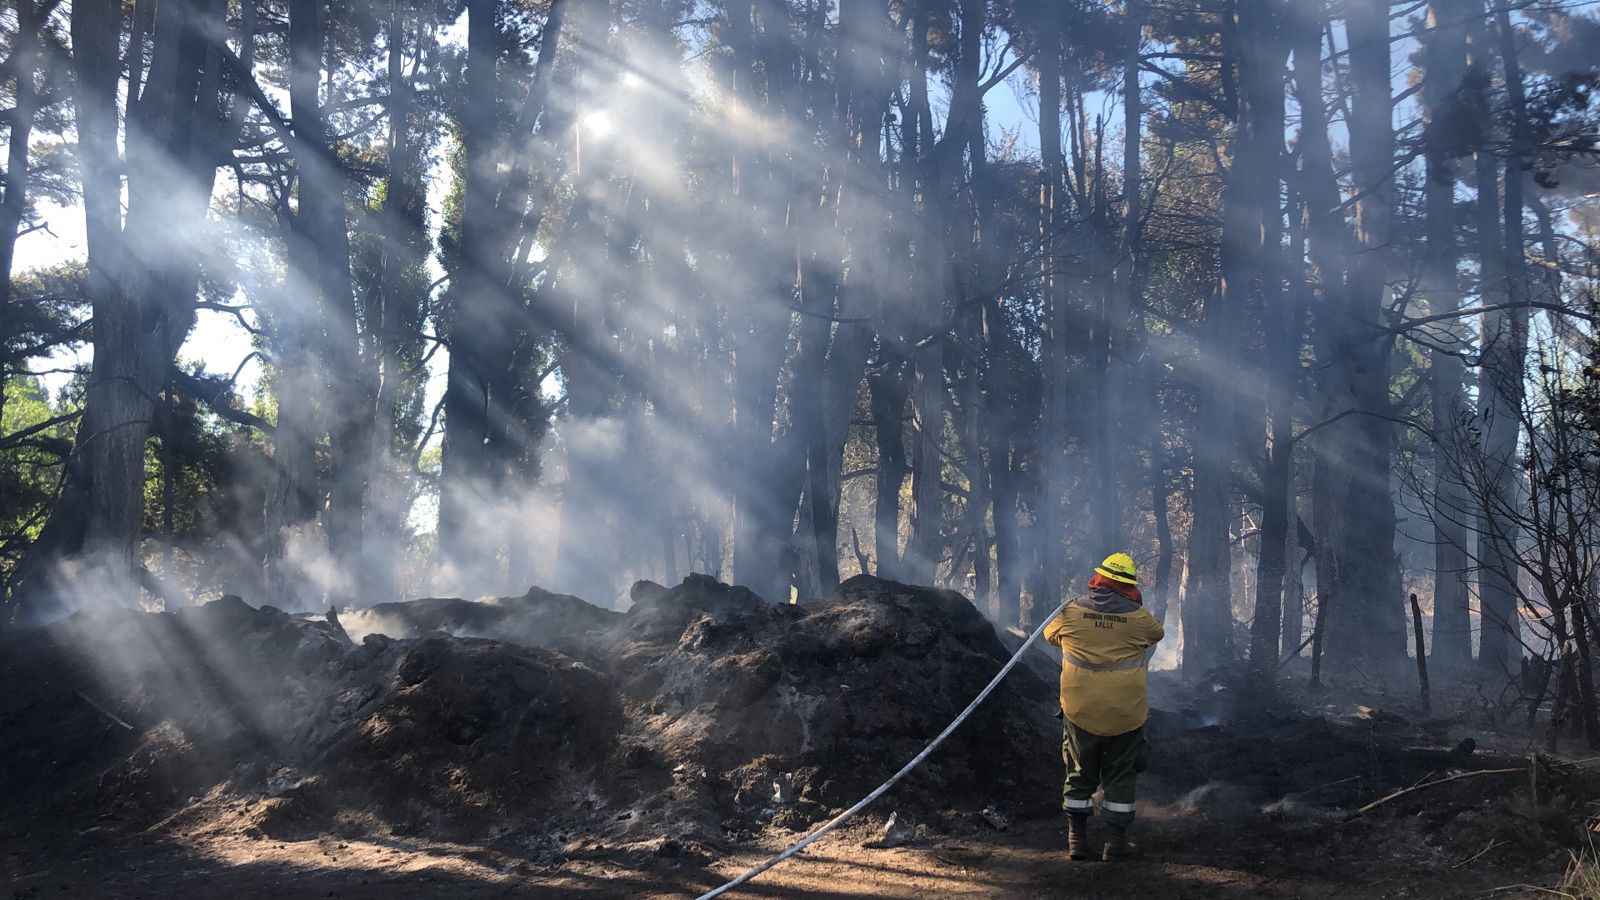 En Bariloche, detrás de la empresa Invap, se desató el incendio más crítico del verano, con riesgo para la población. Foto: Archivo/Chino Leiva